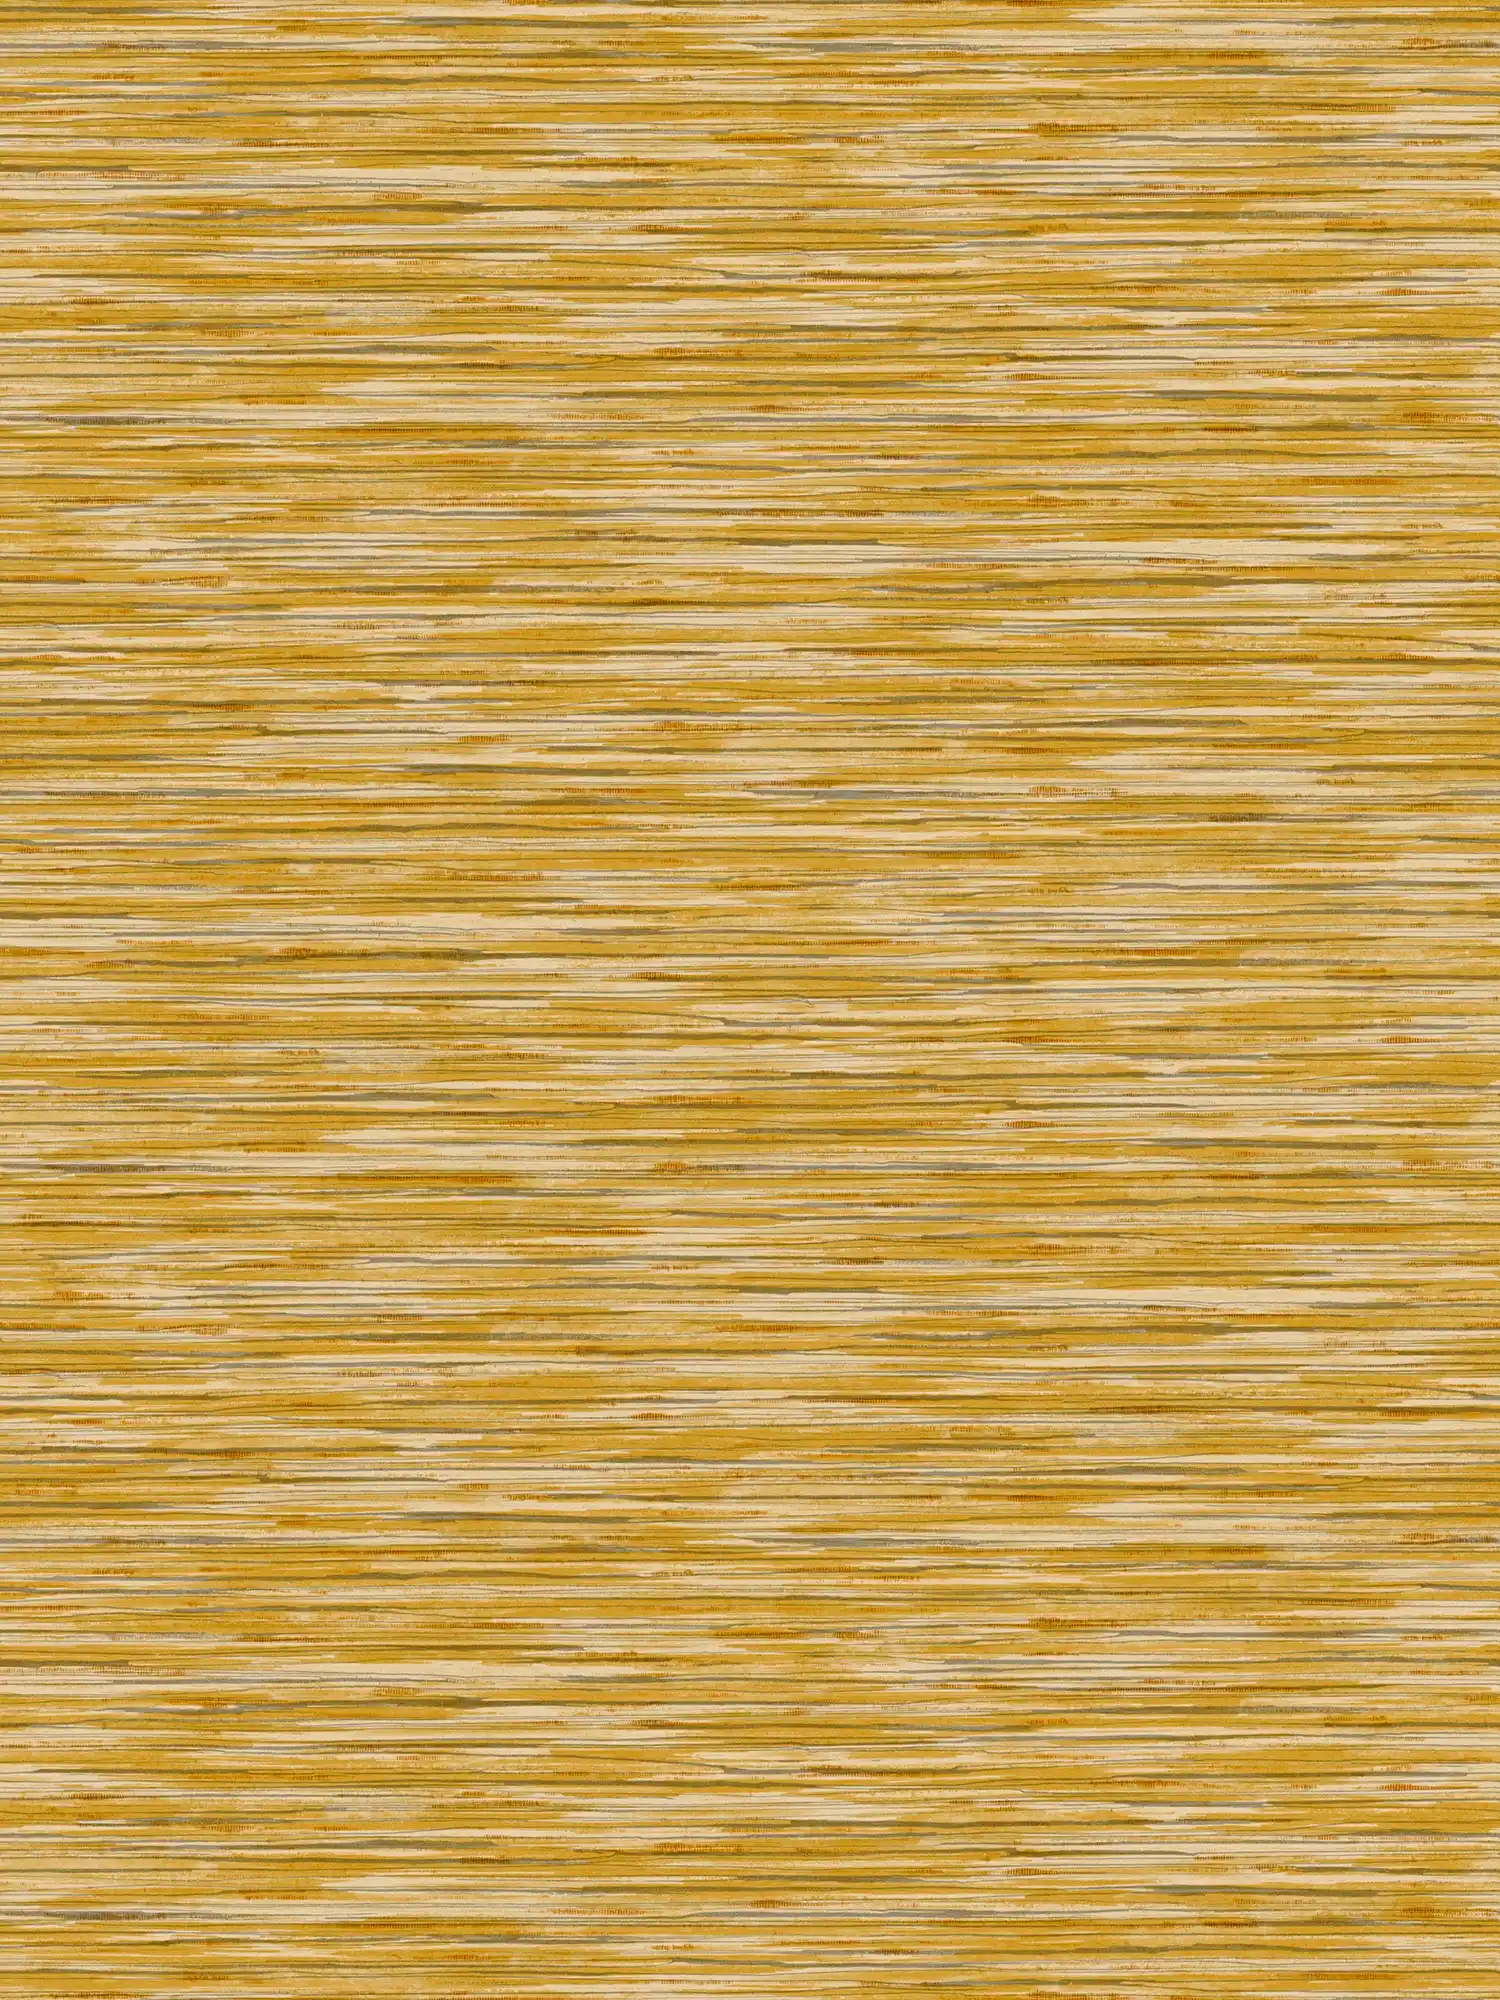 Vlekkenpatroon behang met natuurlijke kleur arceringen - geel
